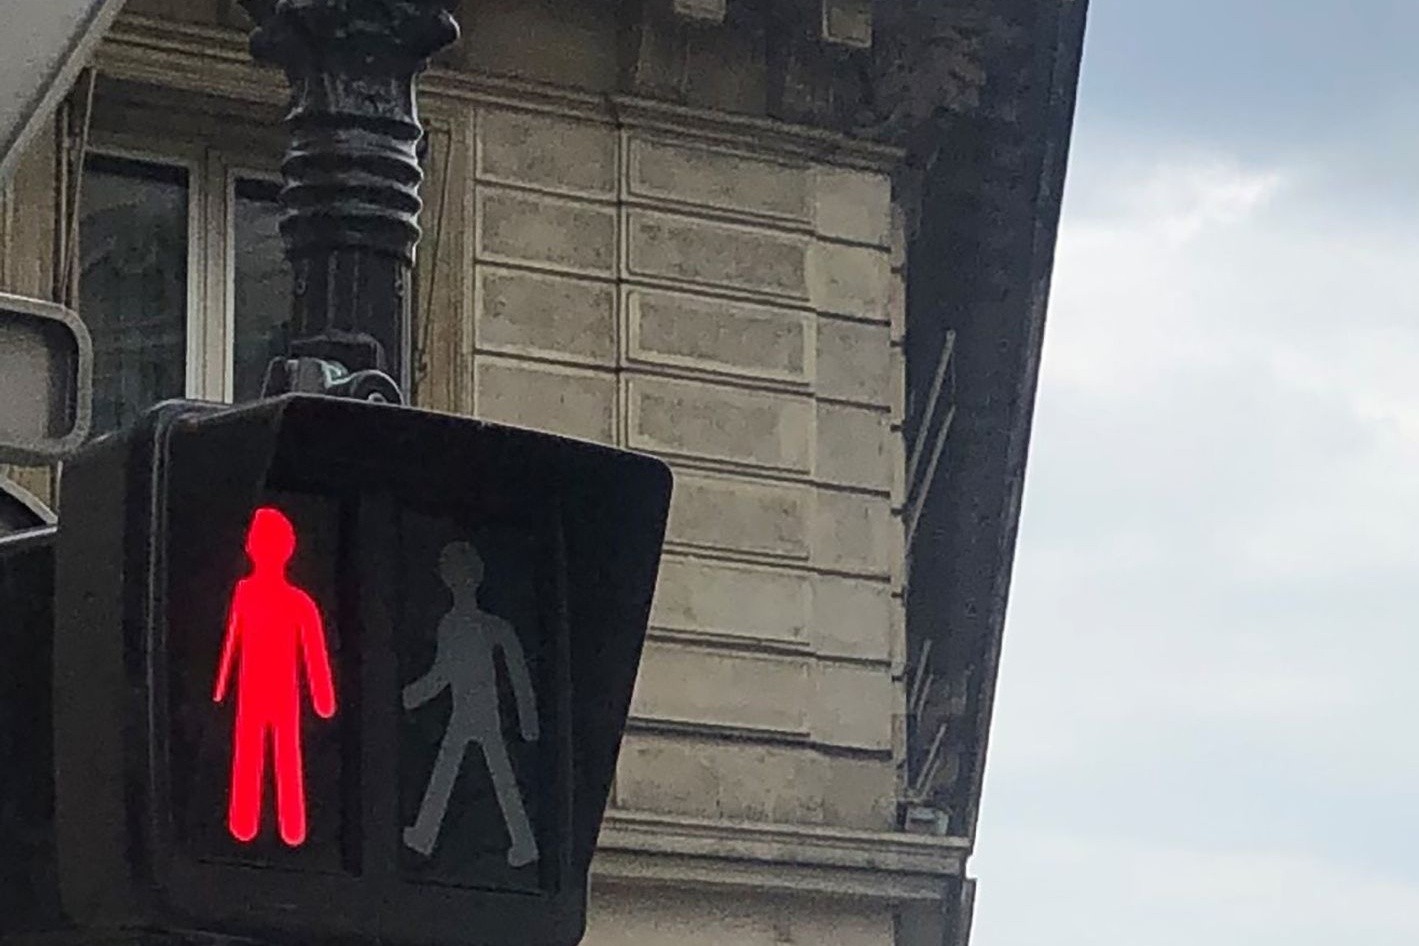 Rote Ampeln werden in Frankreich gerne auch ignoriert.